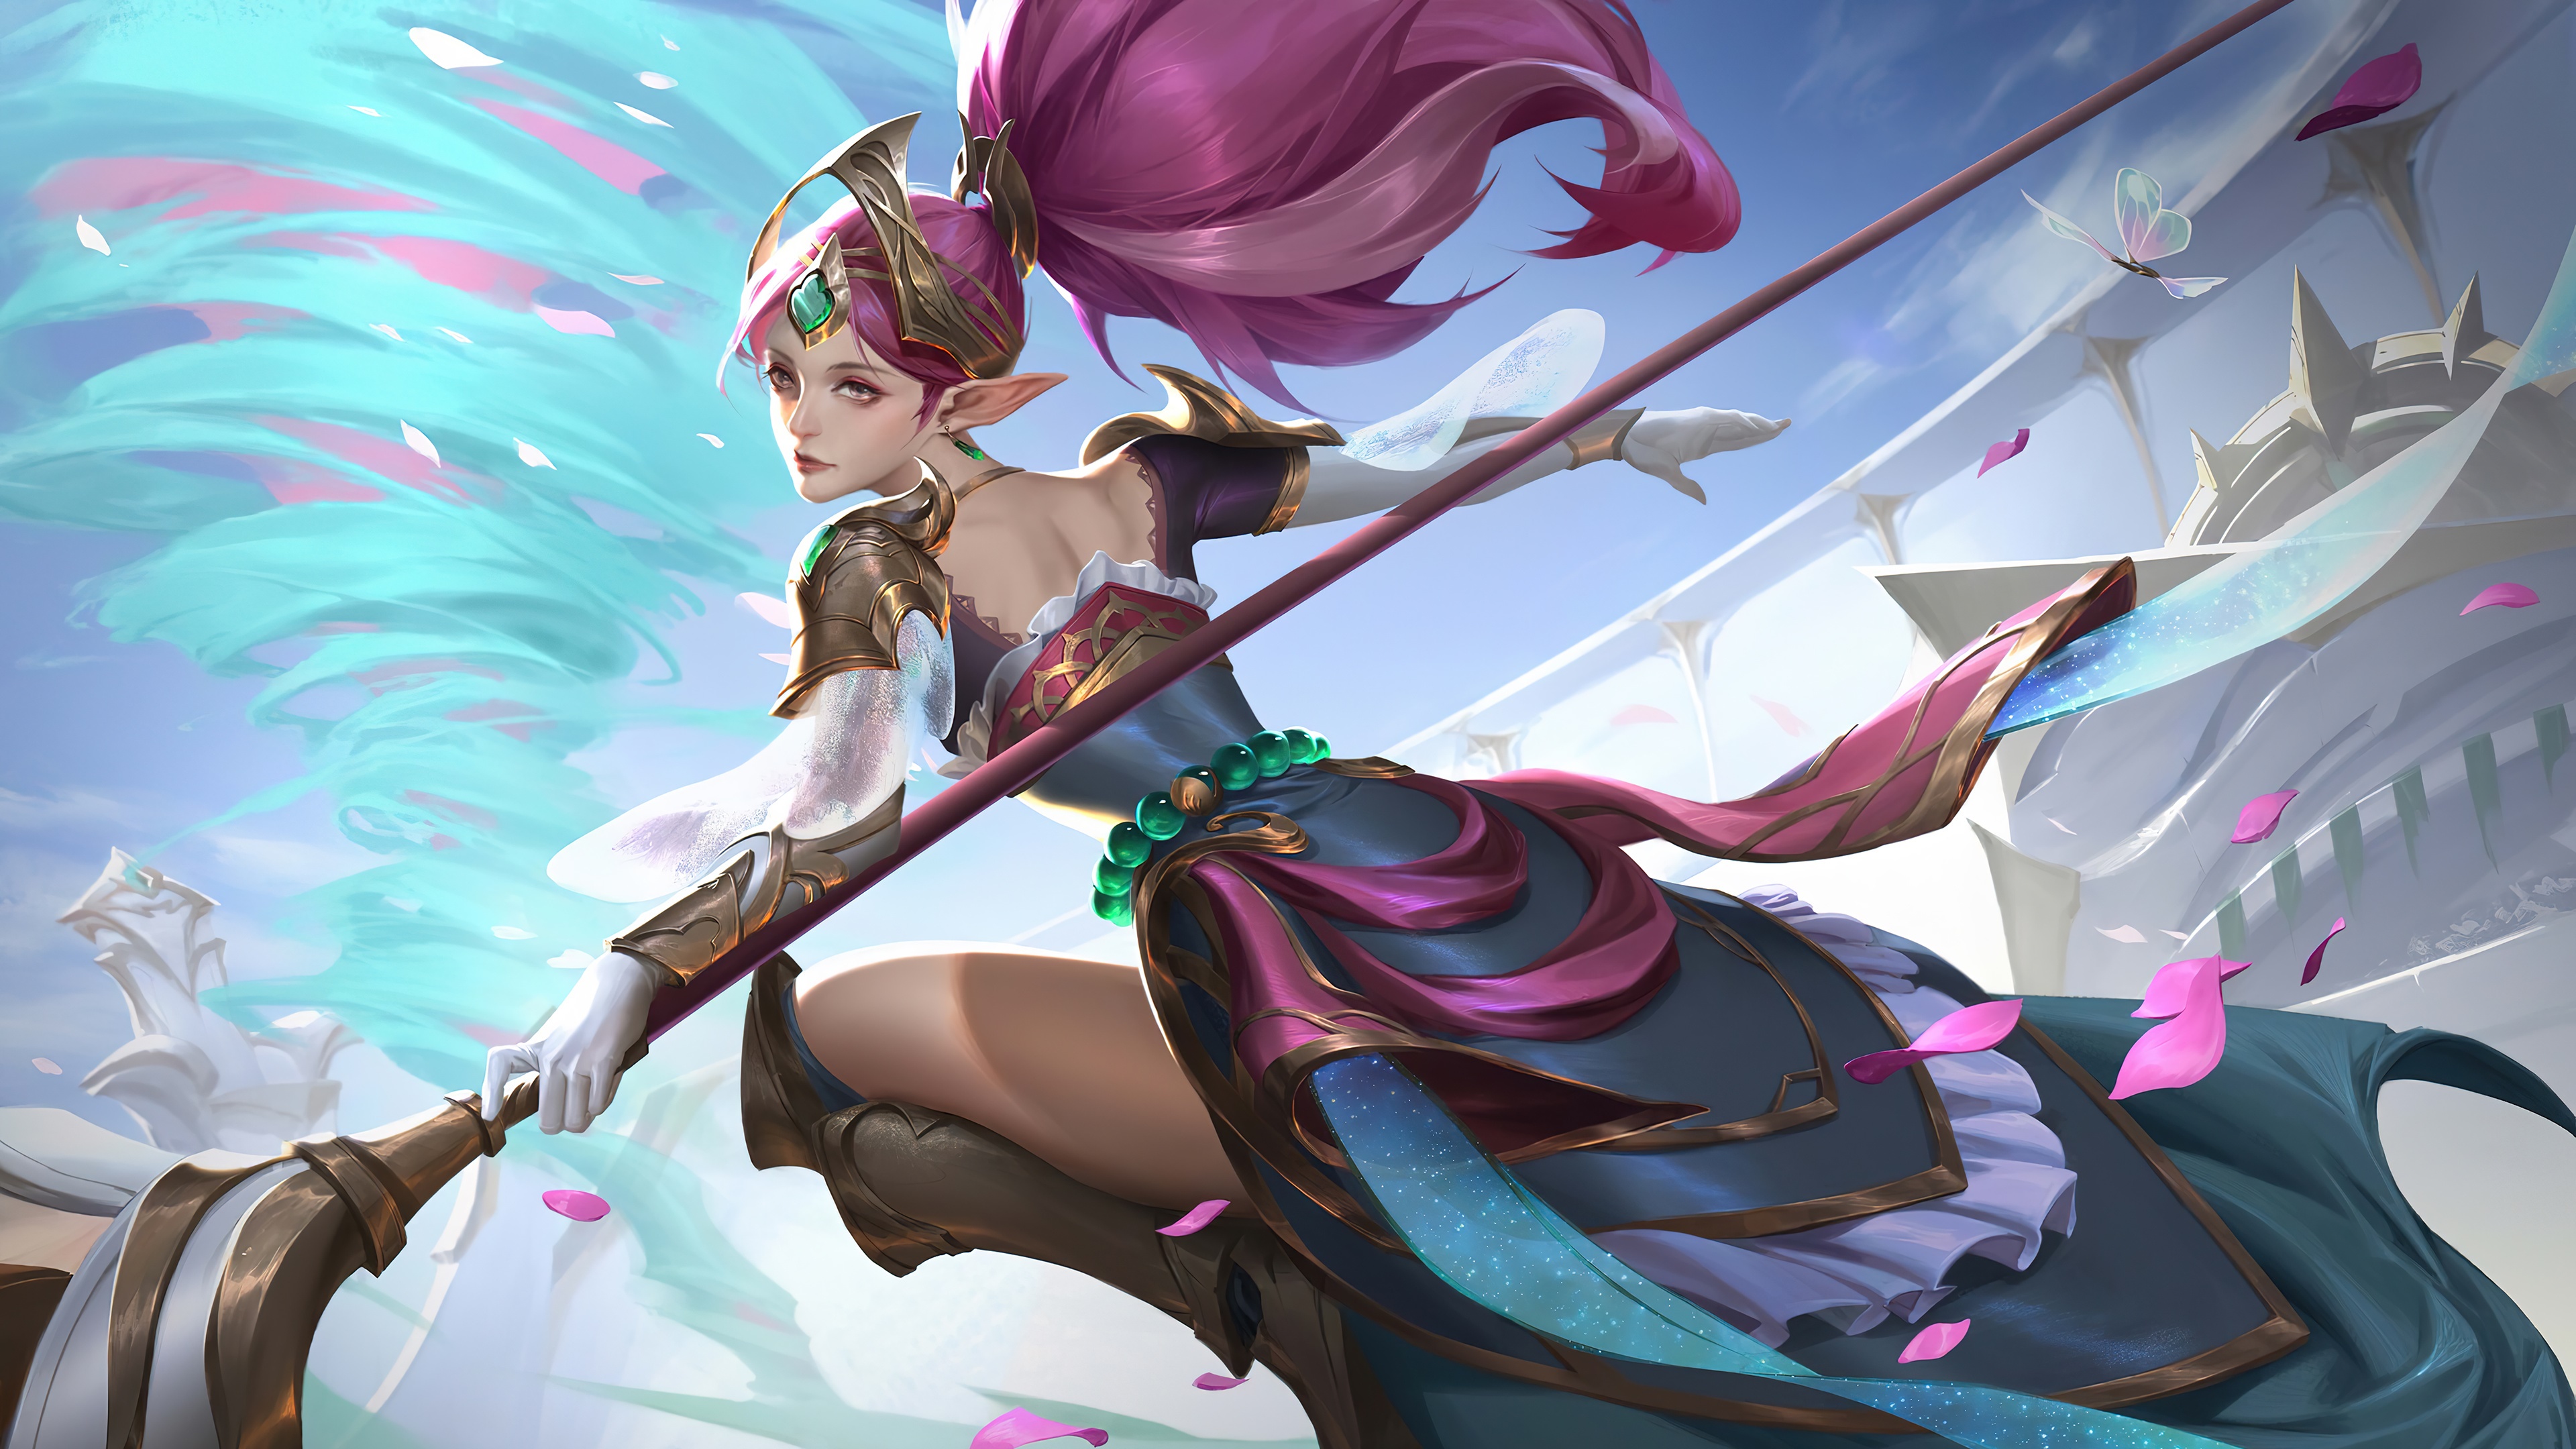 Download Fairy Janna 4k League Of Legends Wallpaper